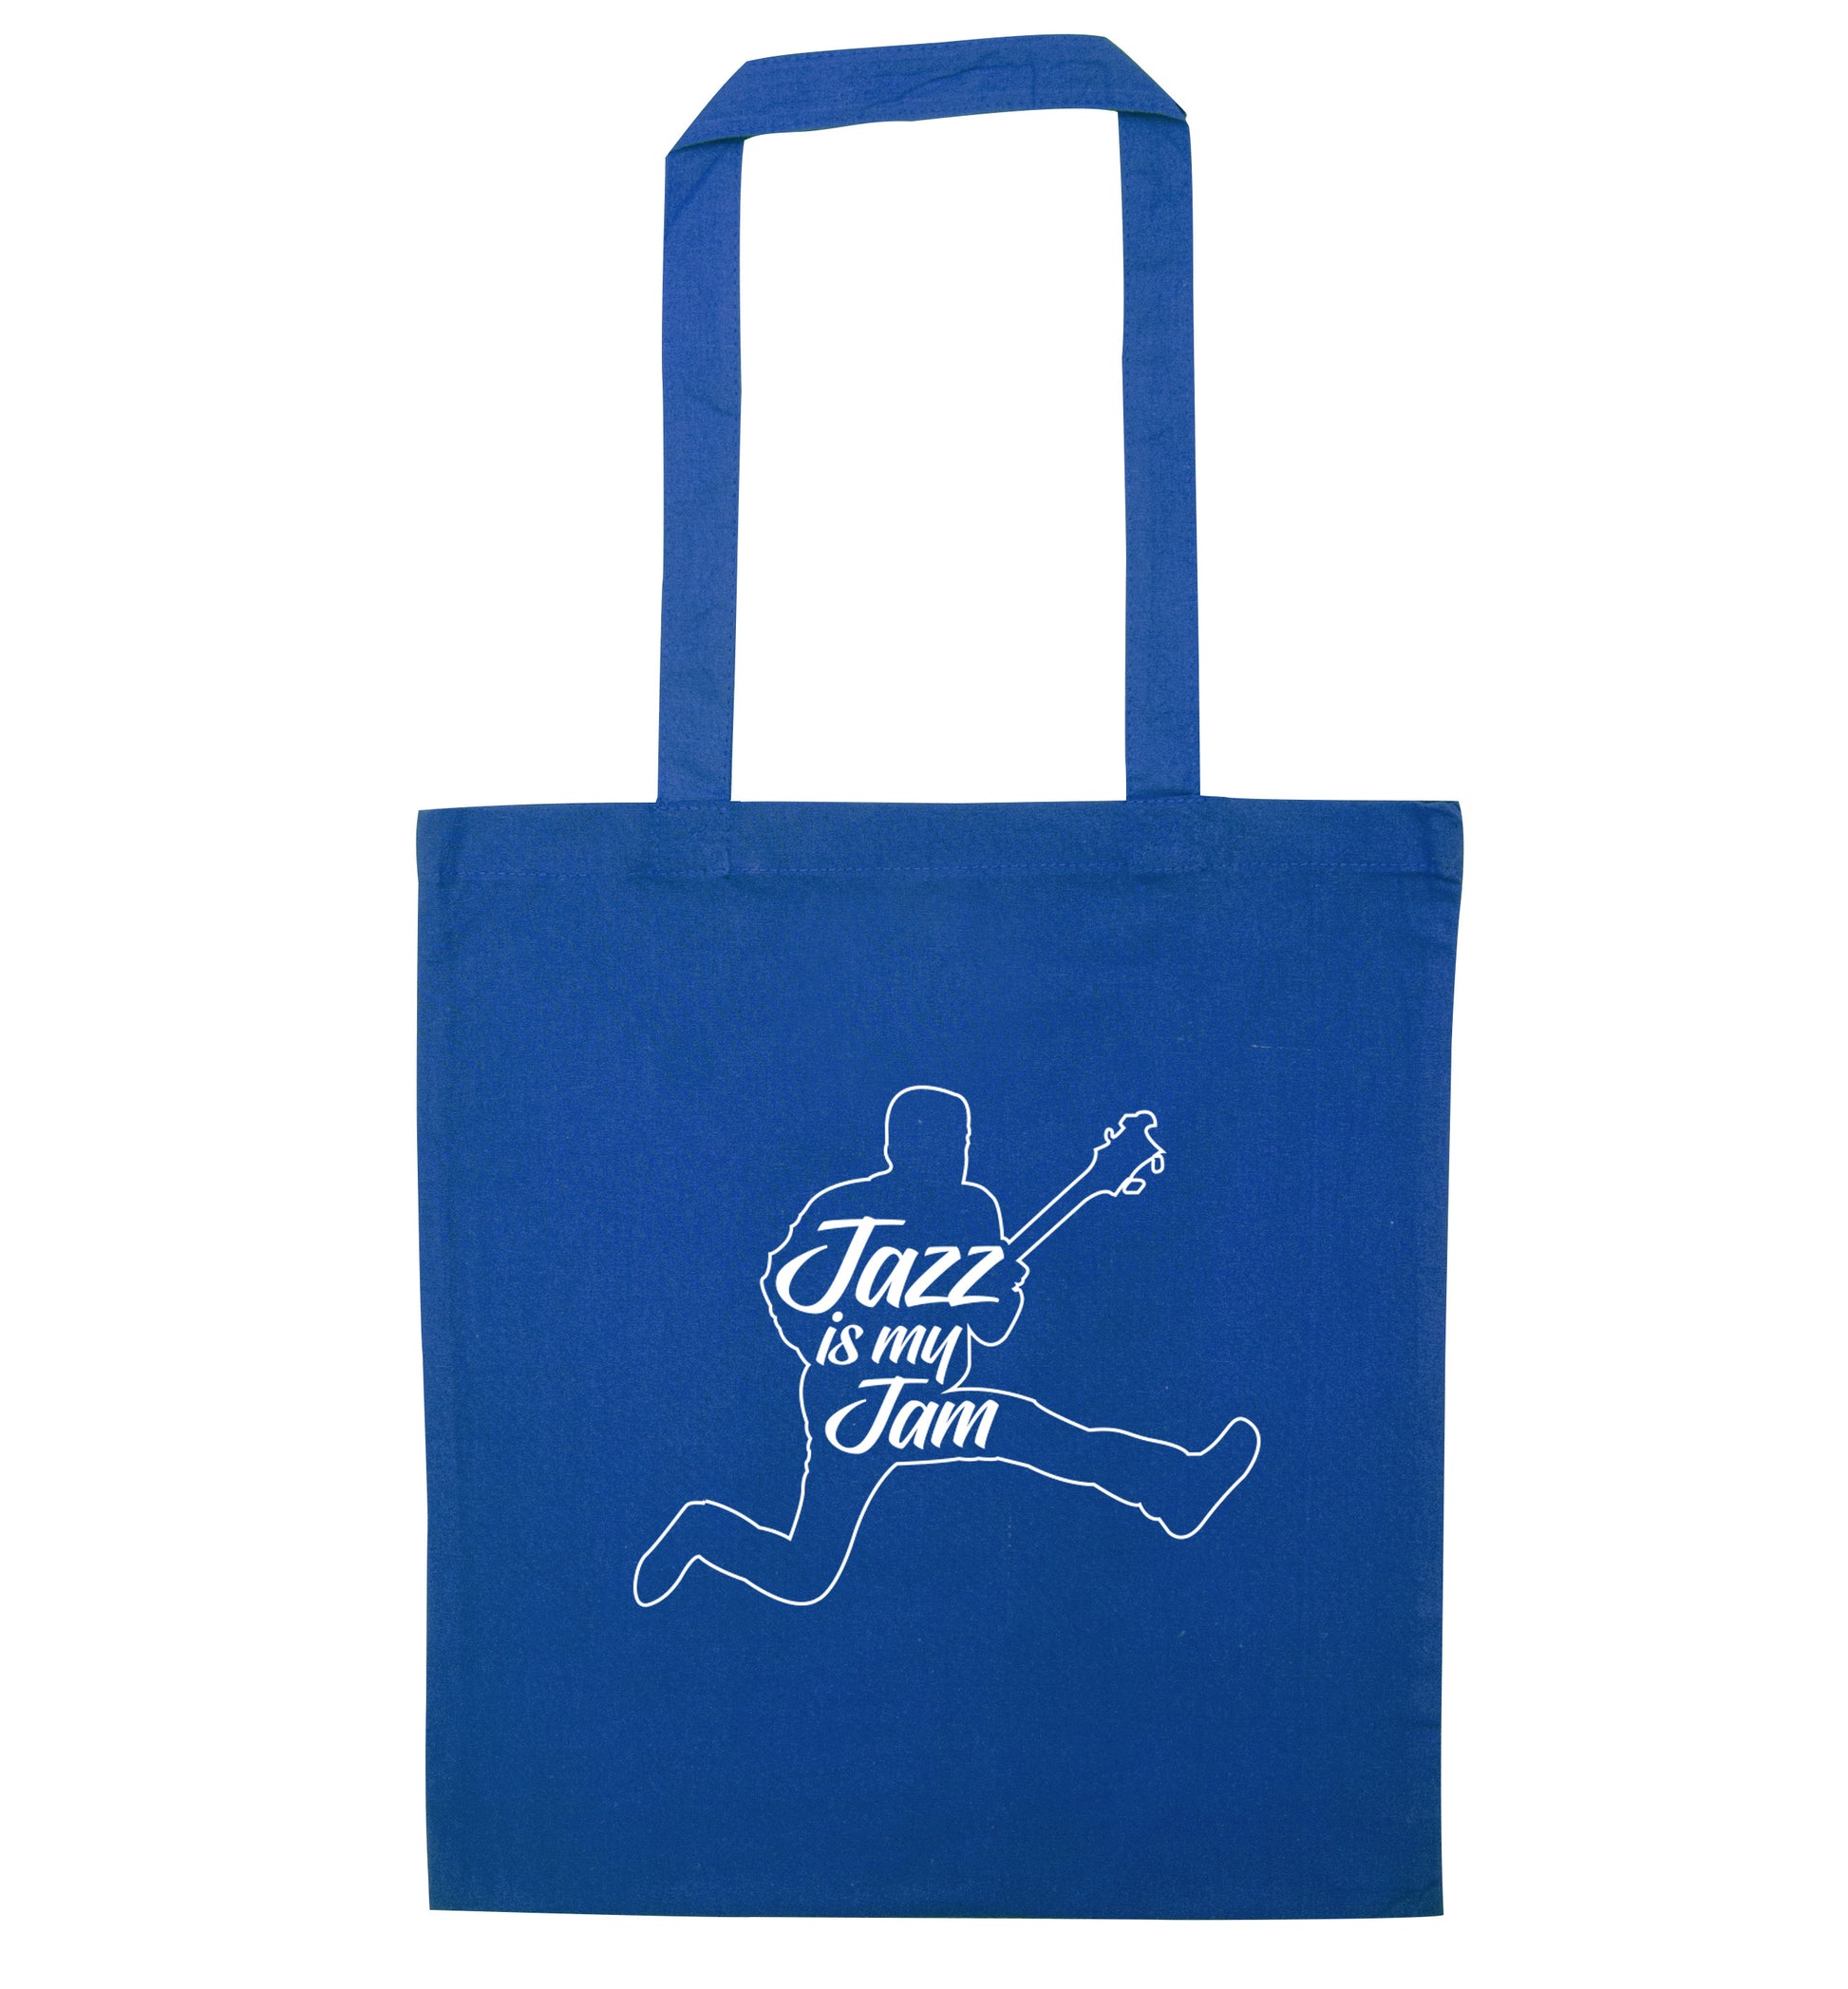 Jazz is my jam blue tote bag